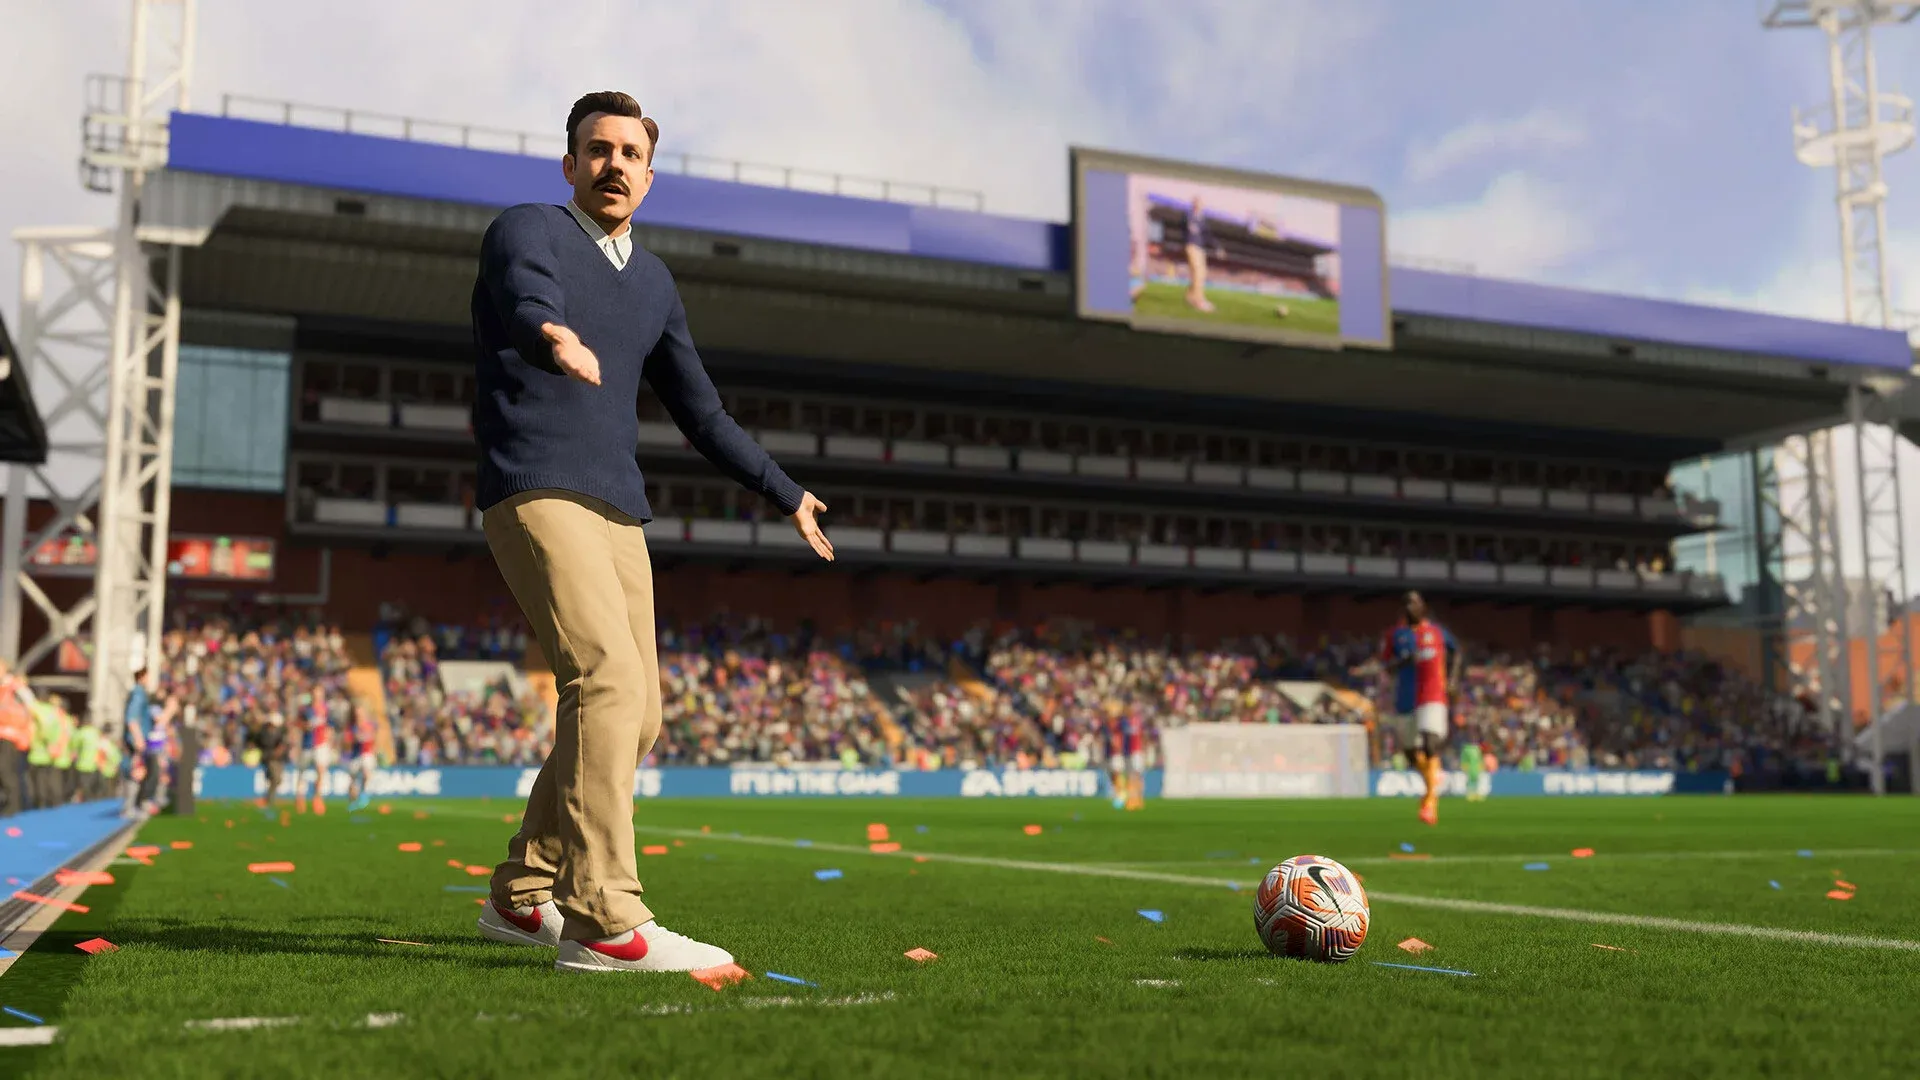 FIFA 23: Requisitos, lançamento, preço, crossplay e tudo o que você precisa  saber sobre o novo game - Millenium